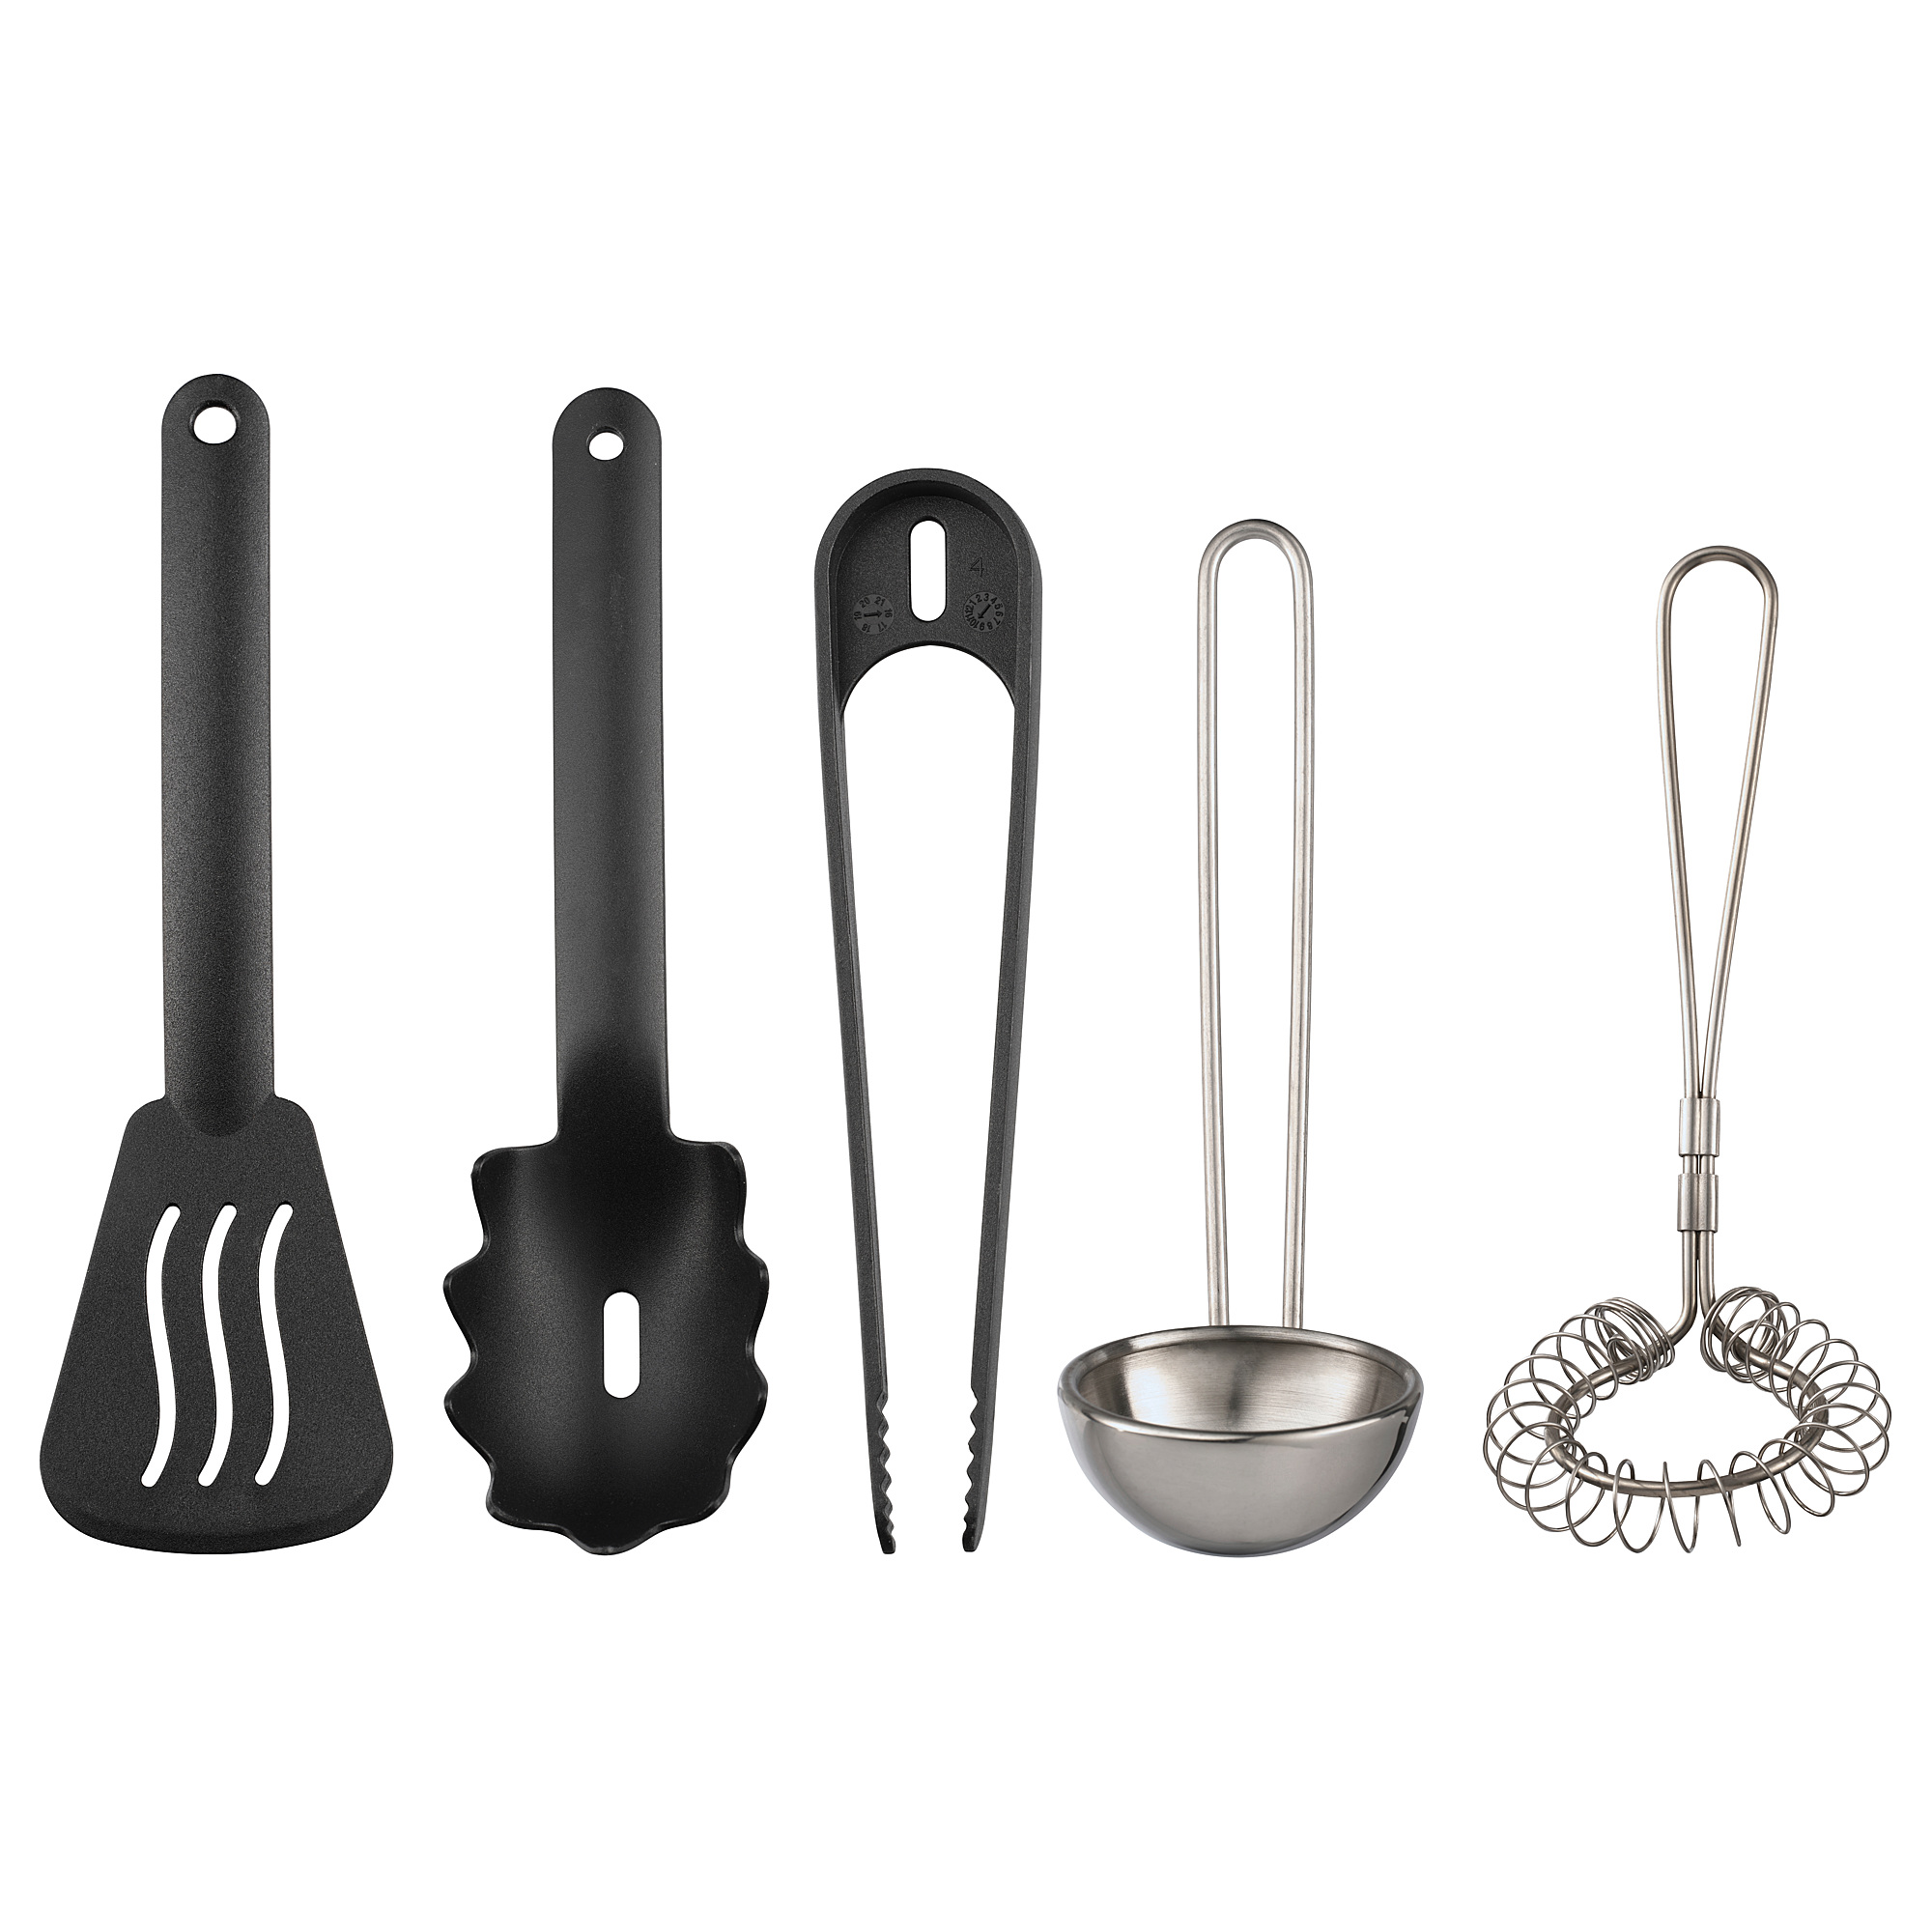 DUKTIG 5-piece toy kitchen utensil set